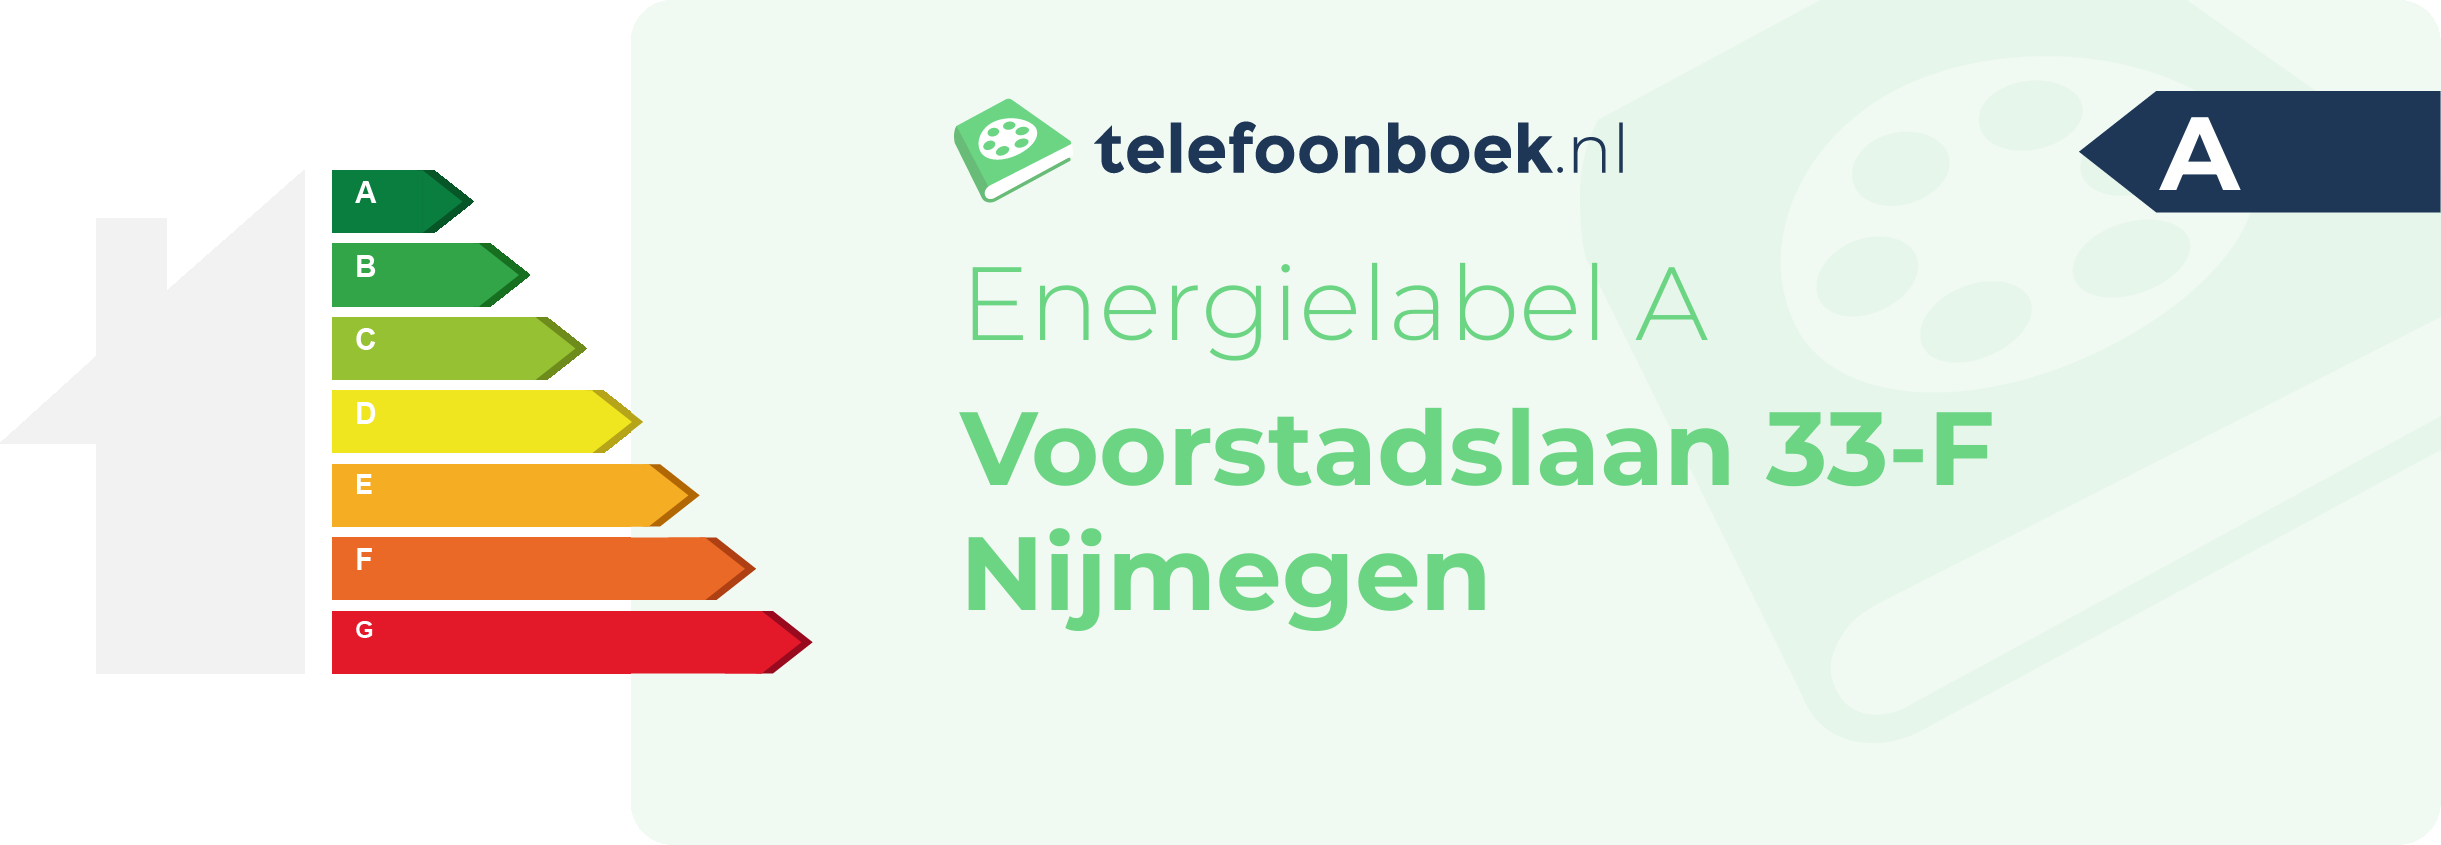 Energielabel Voorstadslaan 33-F Nijmegen